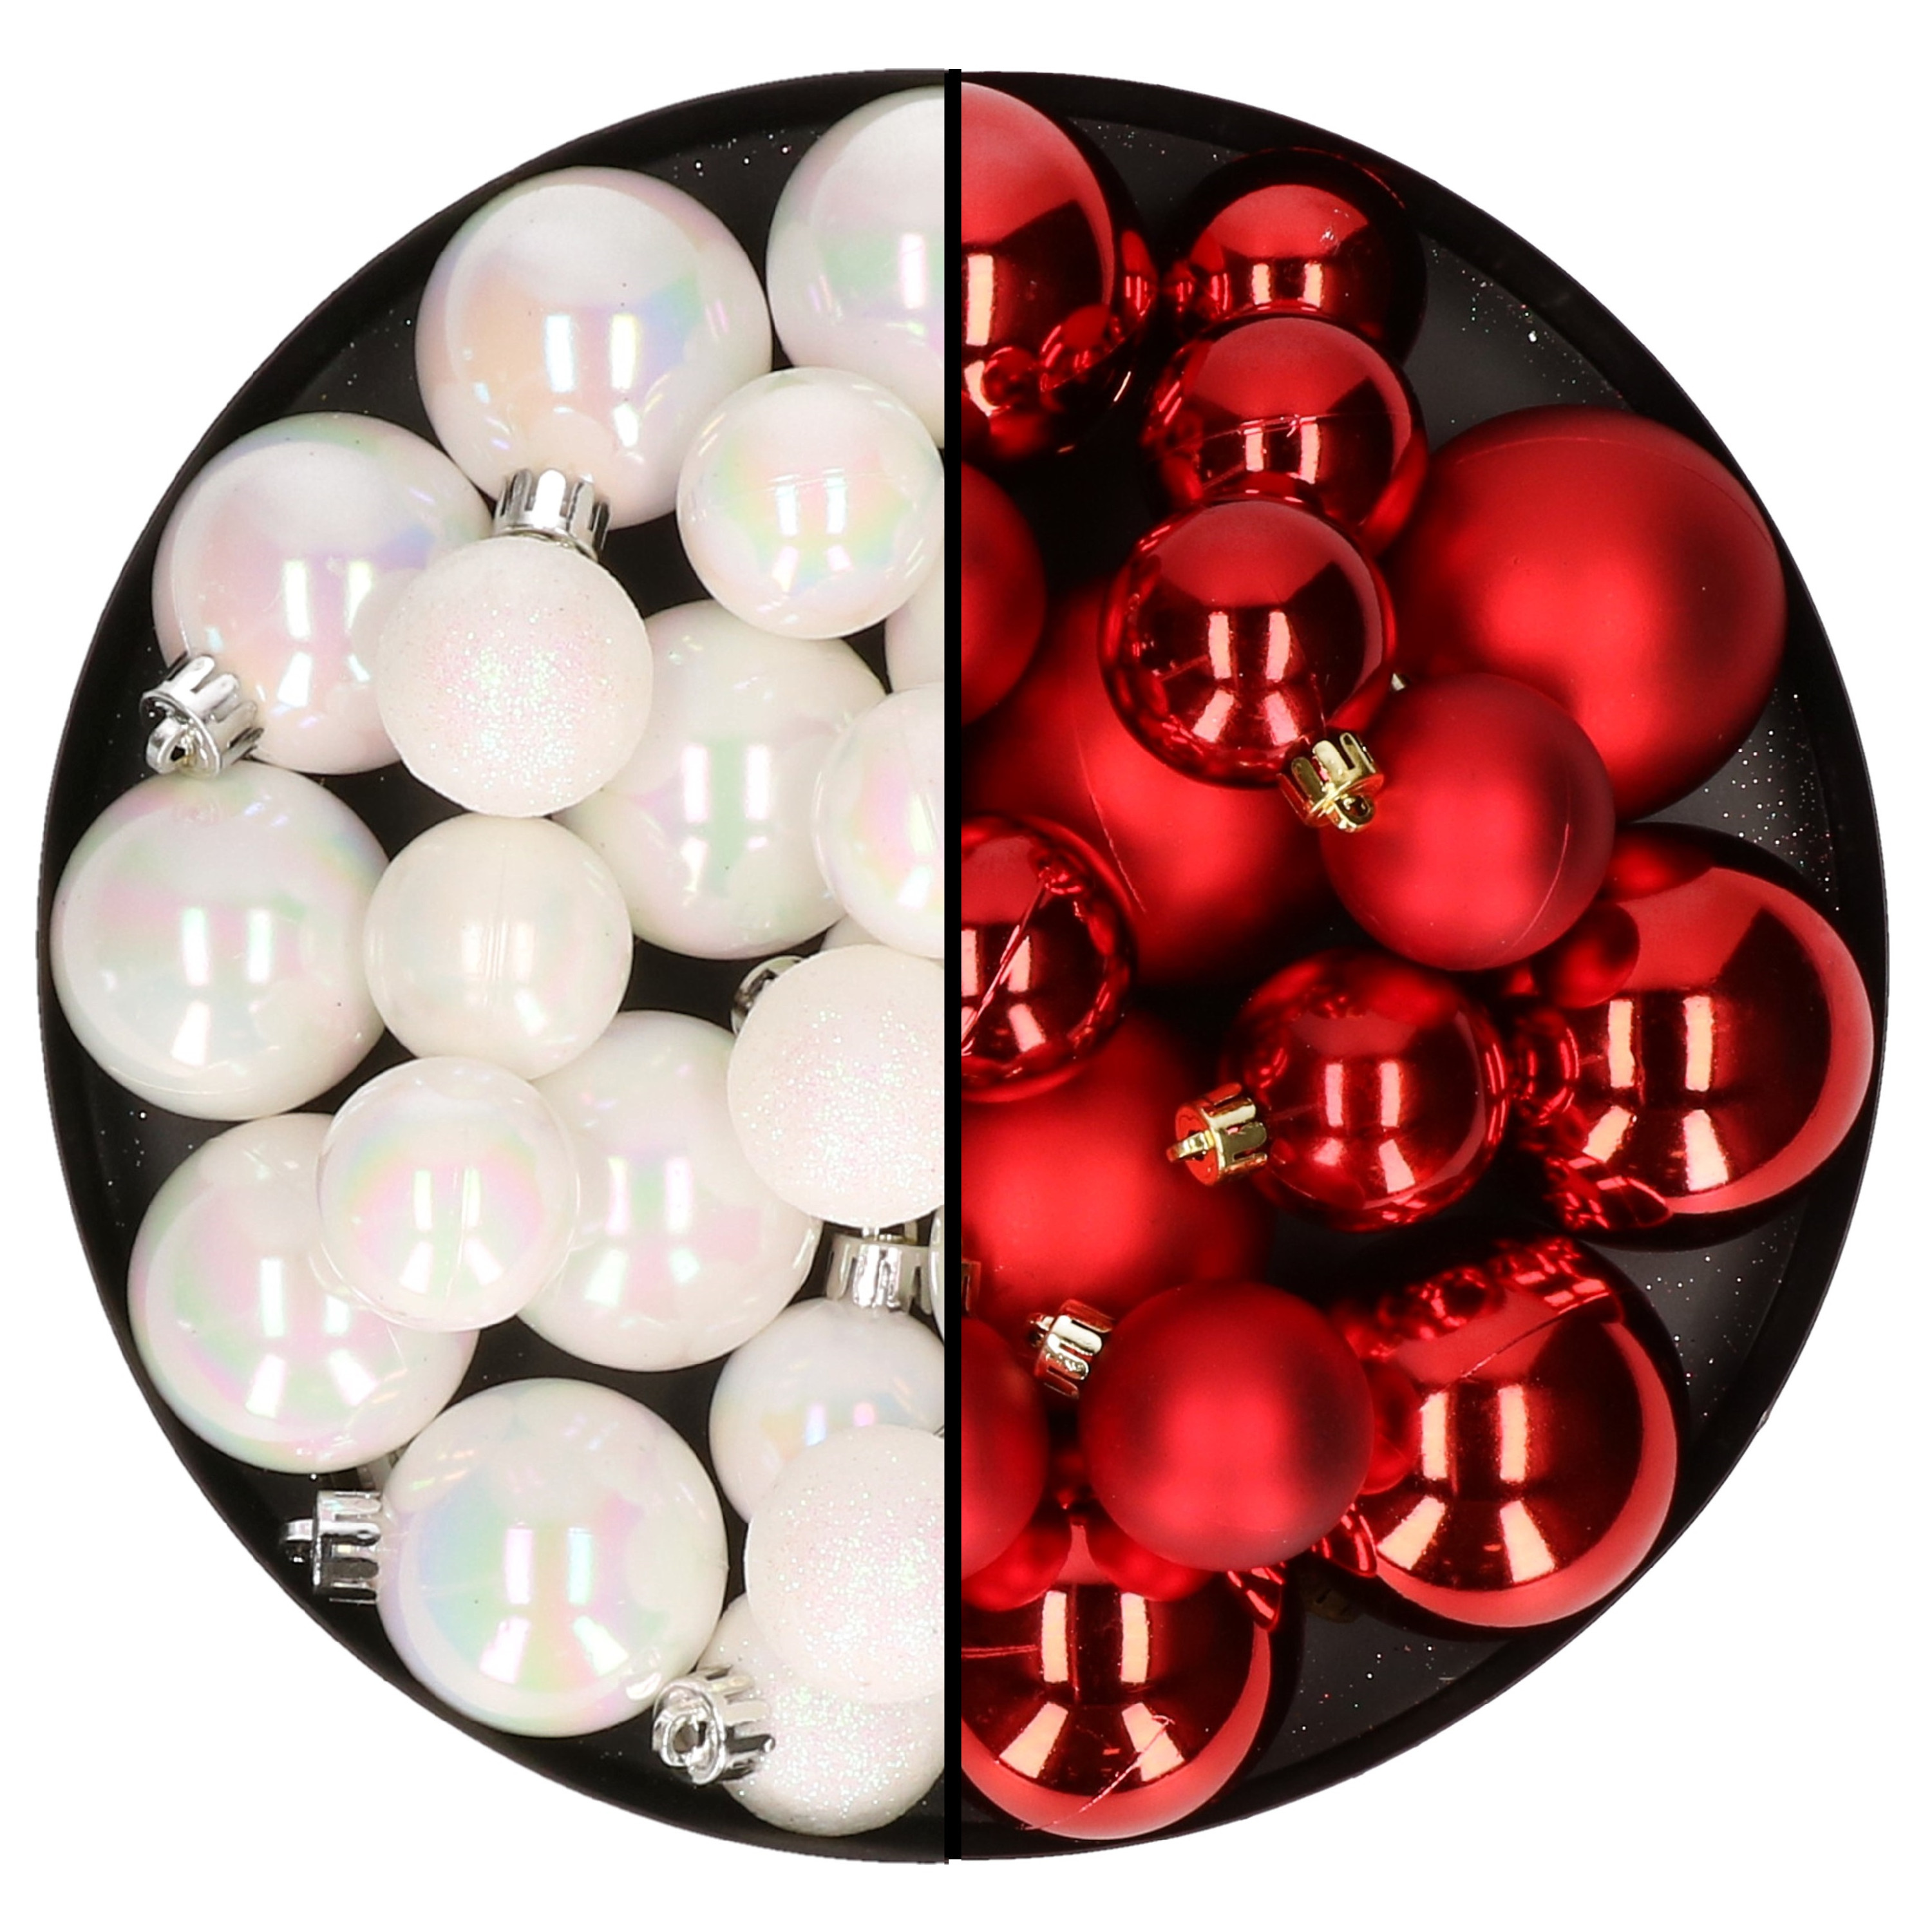 Kerstversiering kunststof kerstballen mix rood-parelmoer wit 6-8-10 cm pakket van 44x stuks